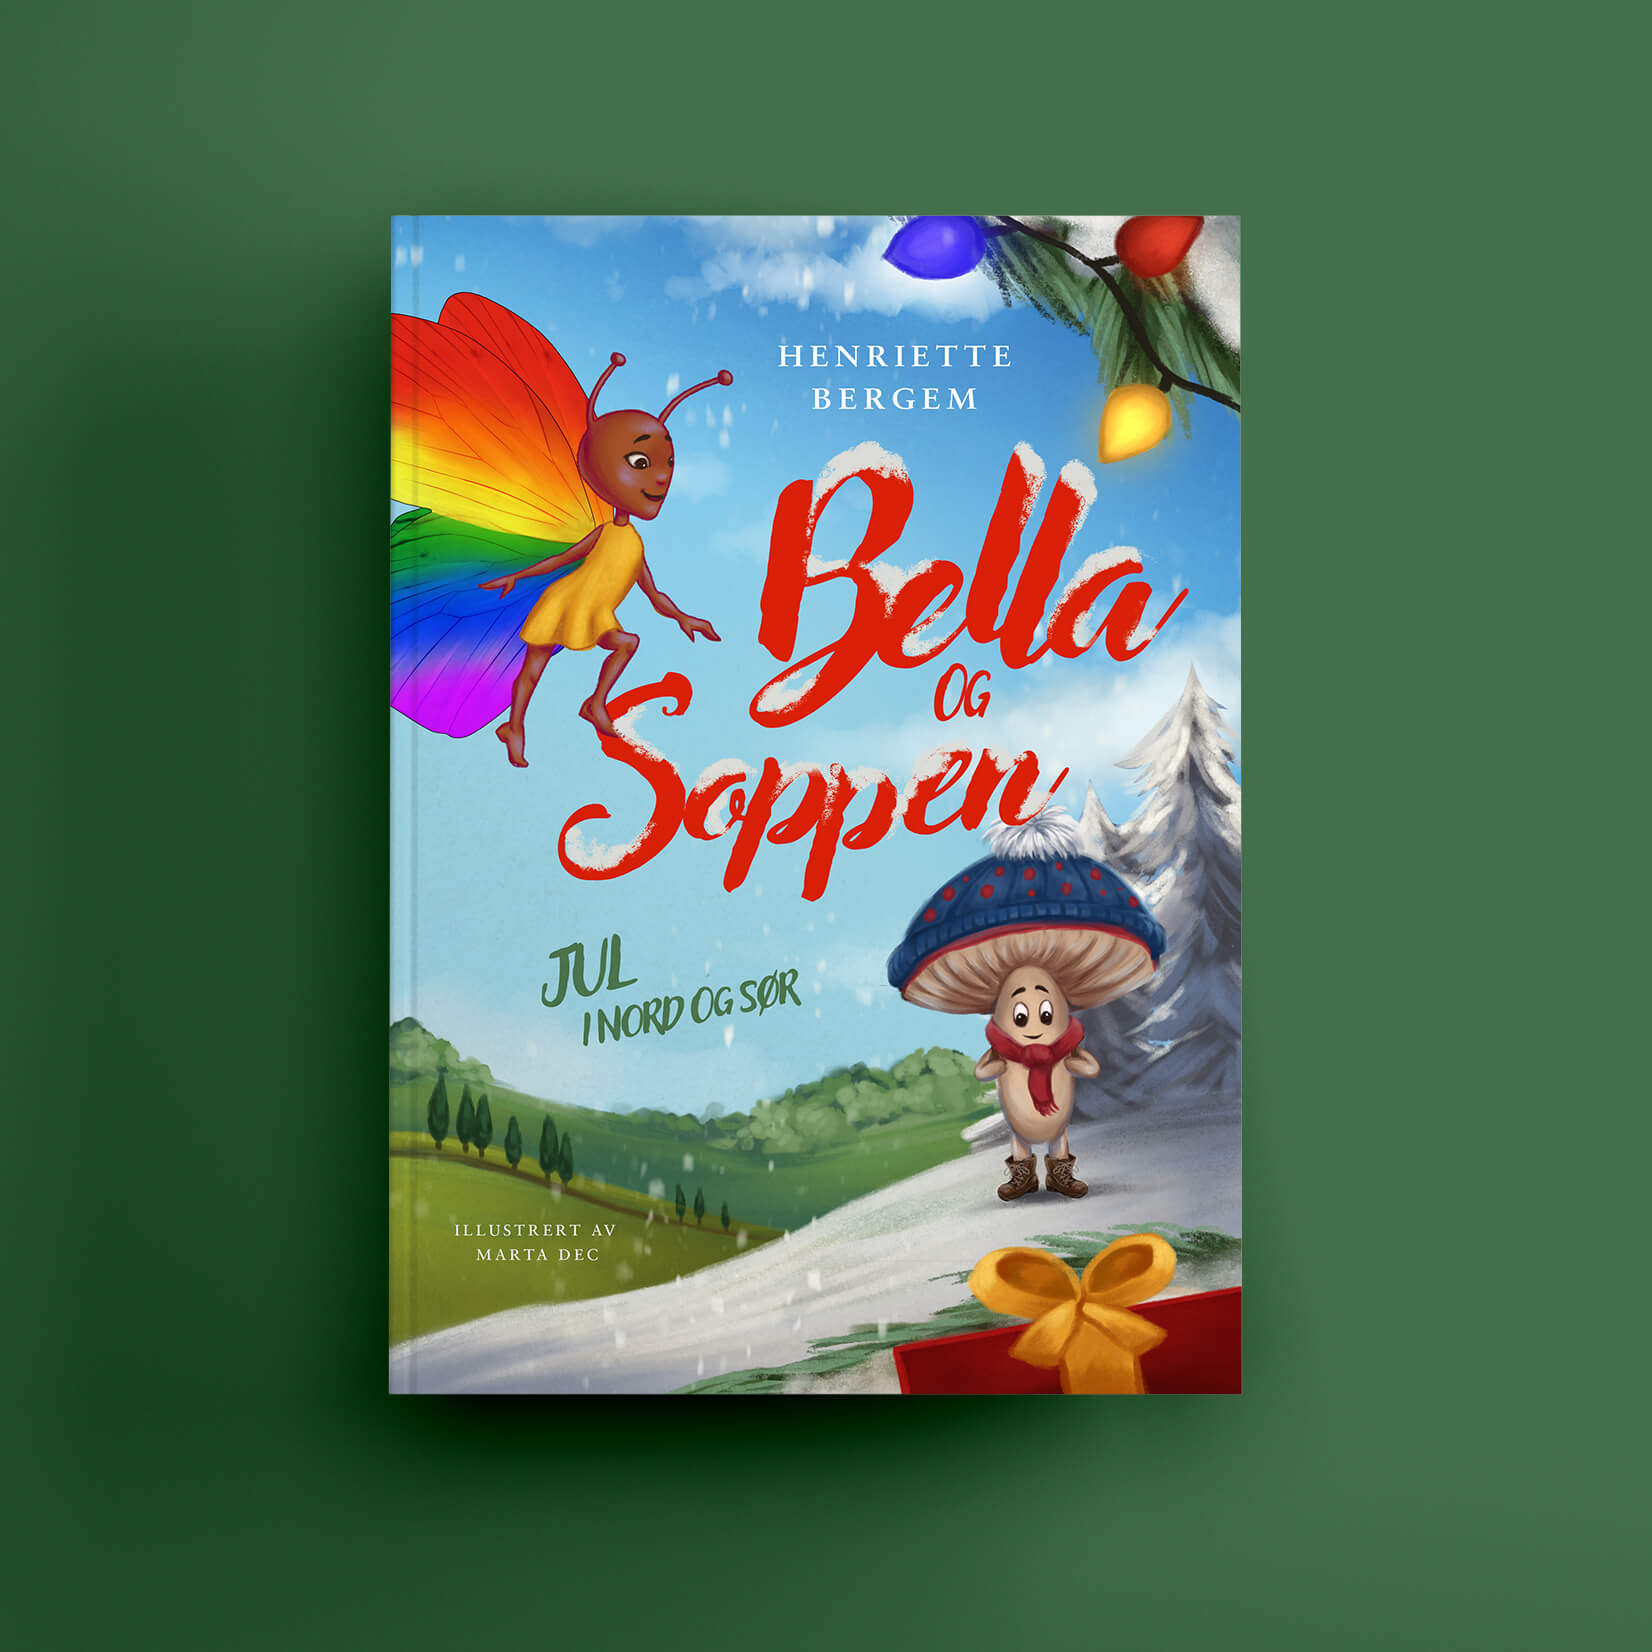 An illustrated book cover of "Bella og Soppen - en julehistorie".